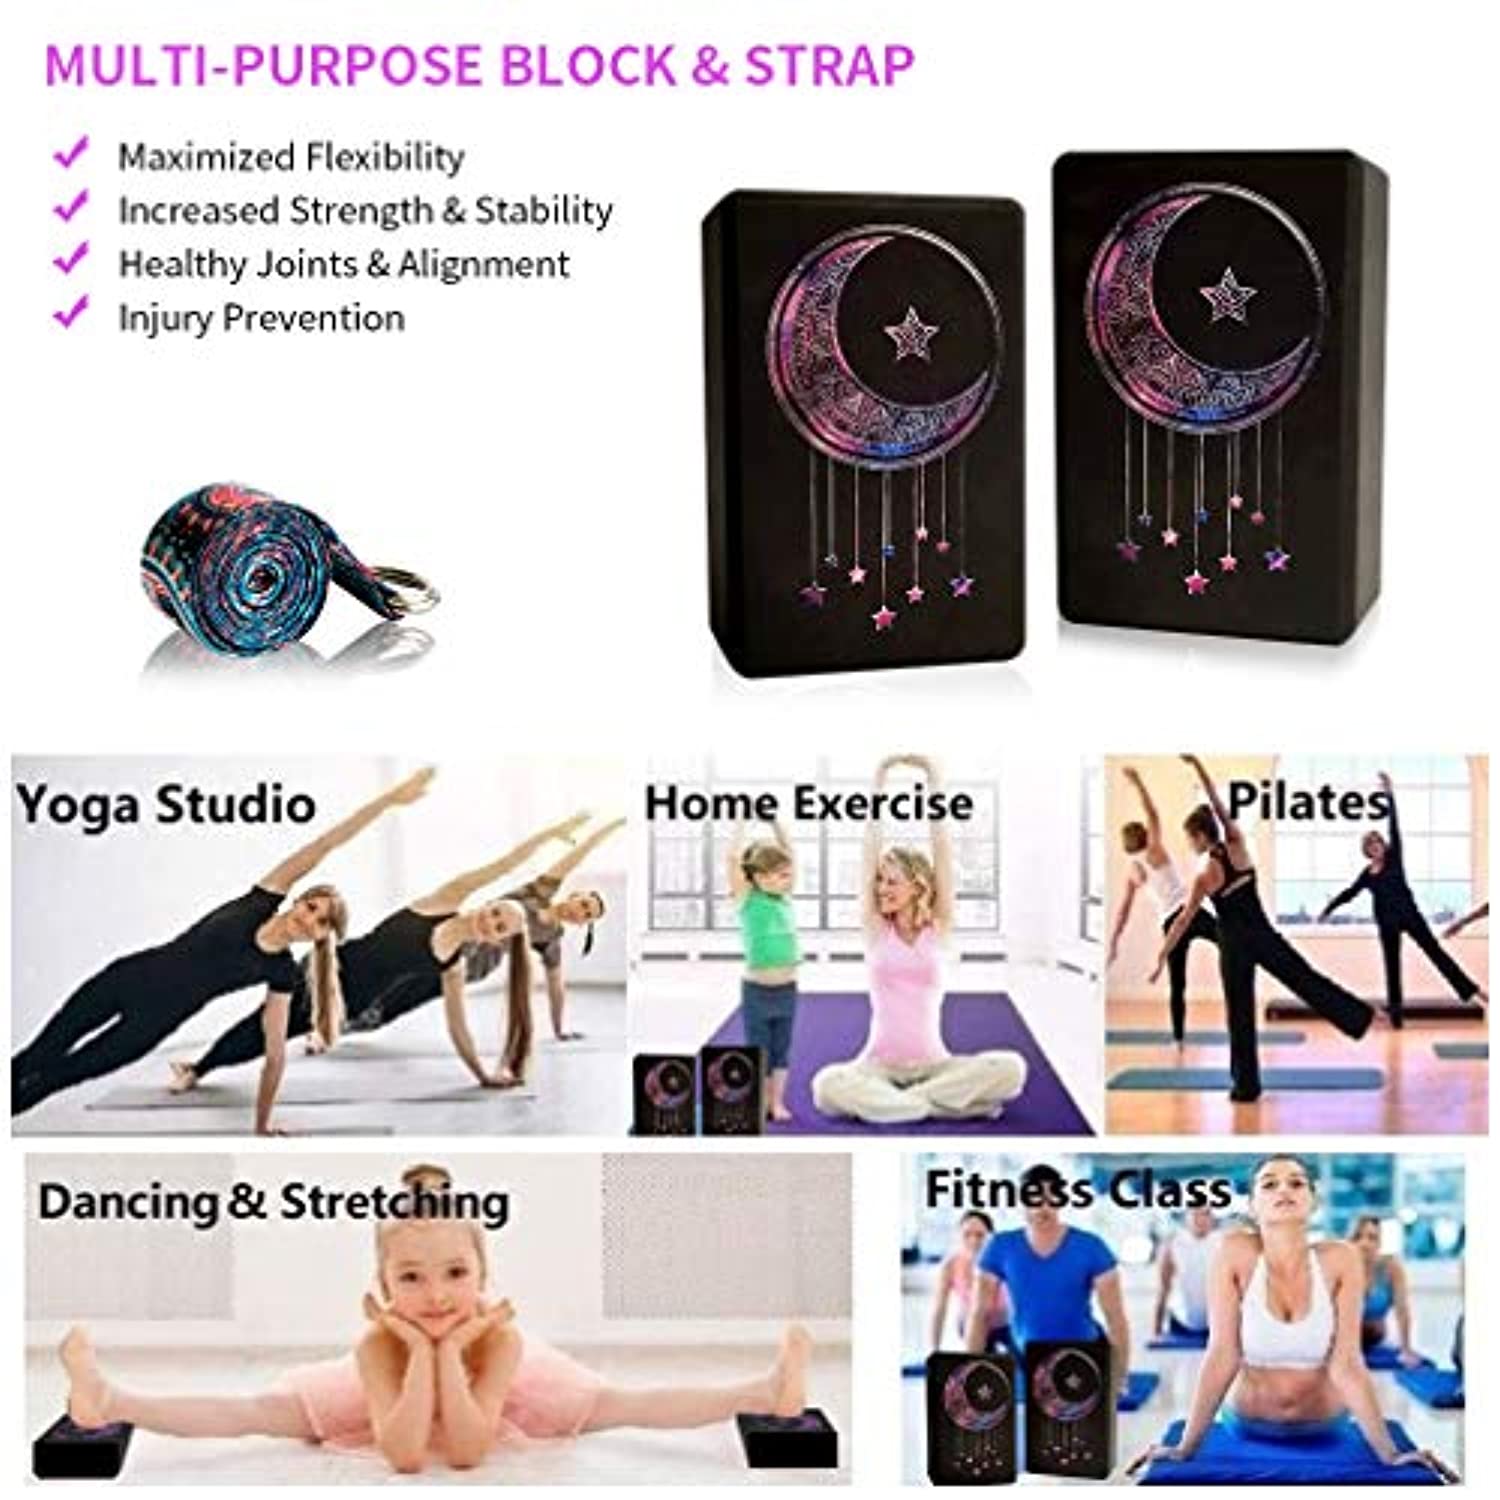 Sol Living Bloque de yoga de ladrillo de corcho para estiramiento, pilates,  meditación y ejercicio, accesorios de yoga antideslizantes sin olor, 4 x 6